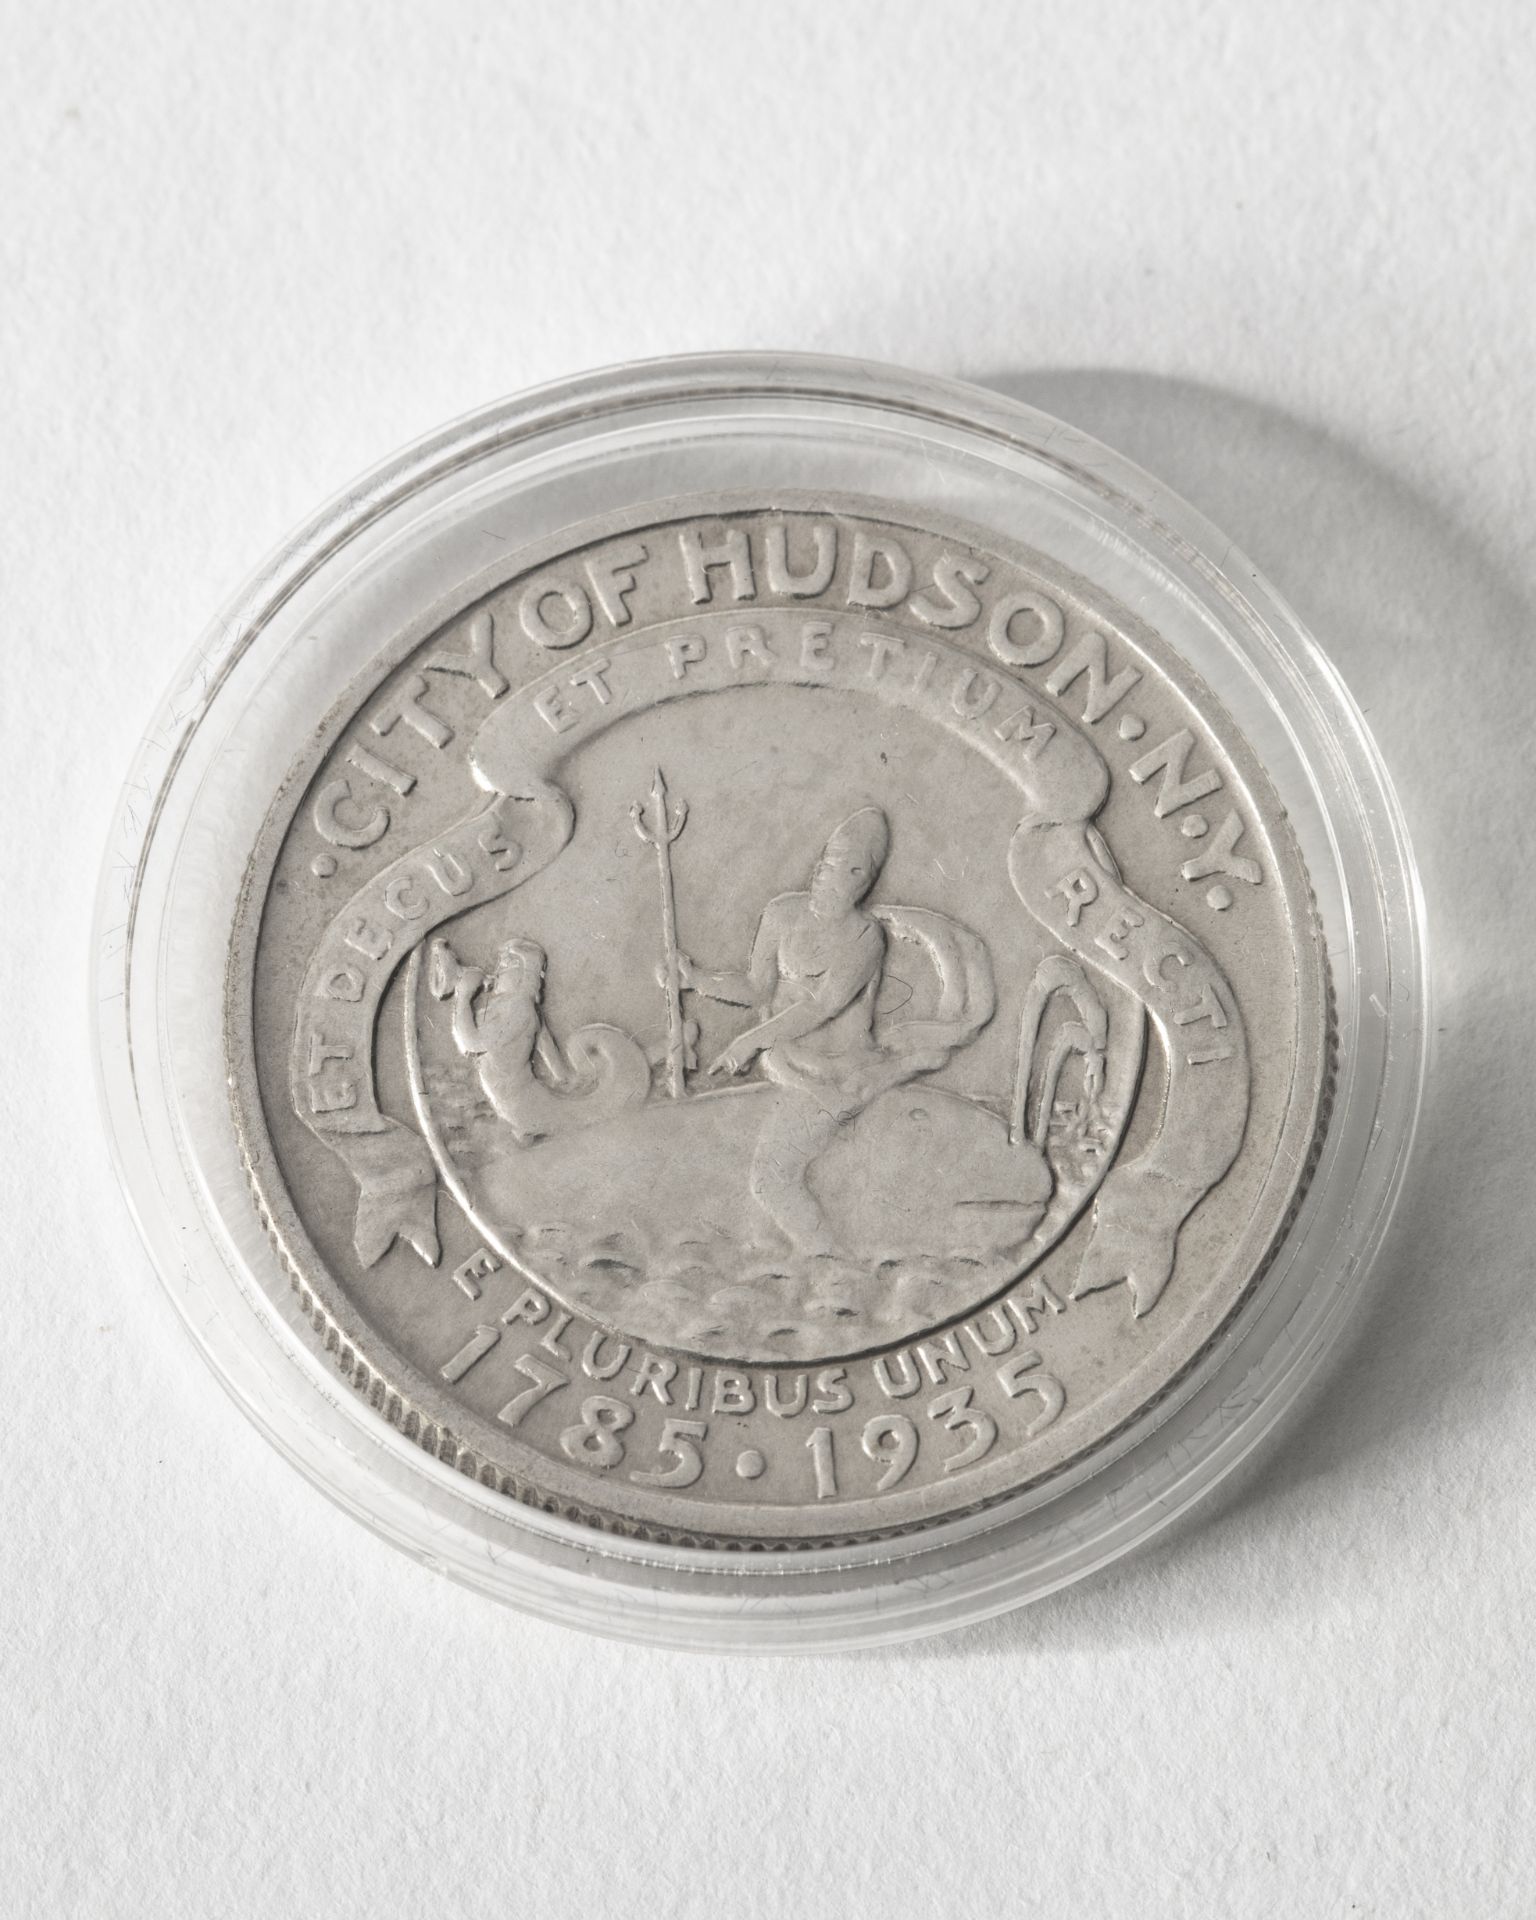 1/2 Dollar USA. 1935. City of Hudson N.Y. 1785-1935.